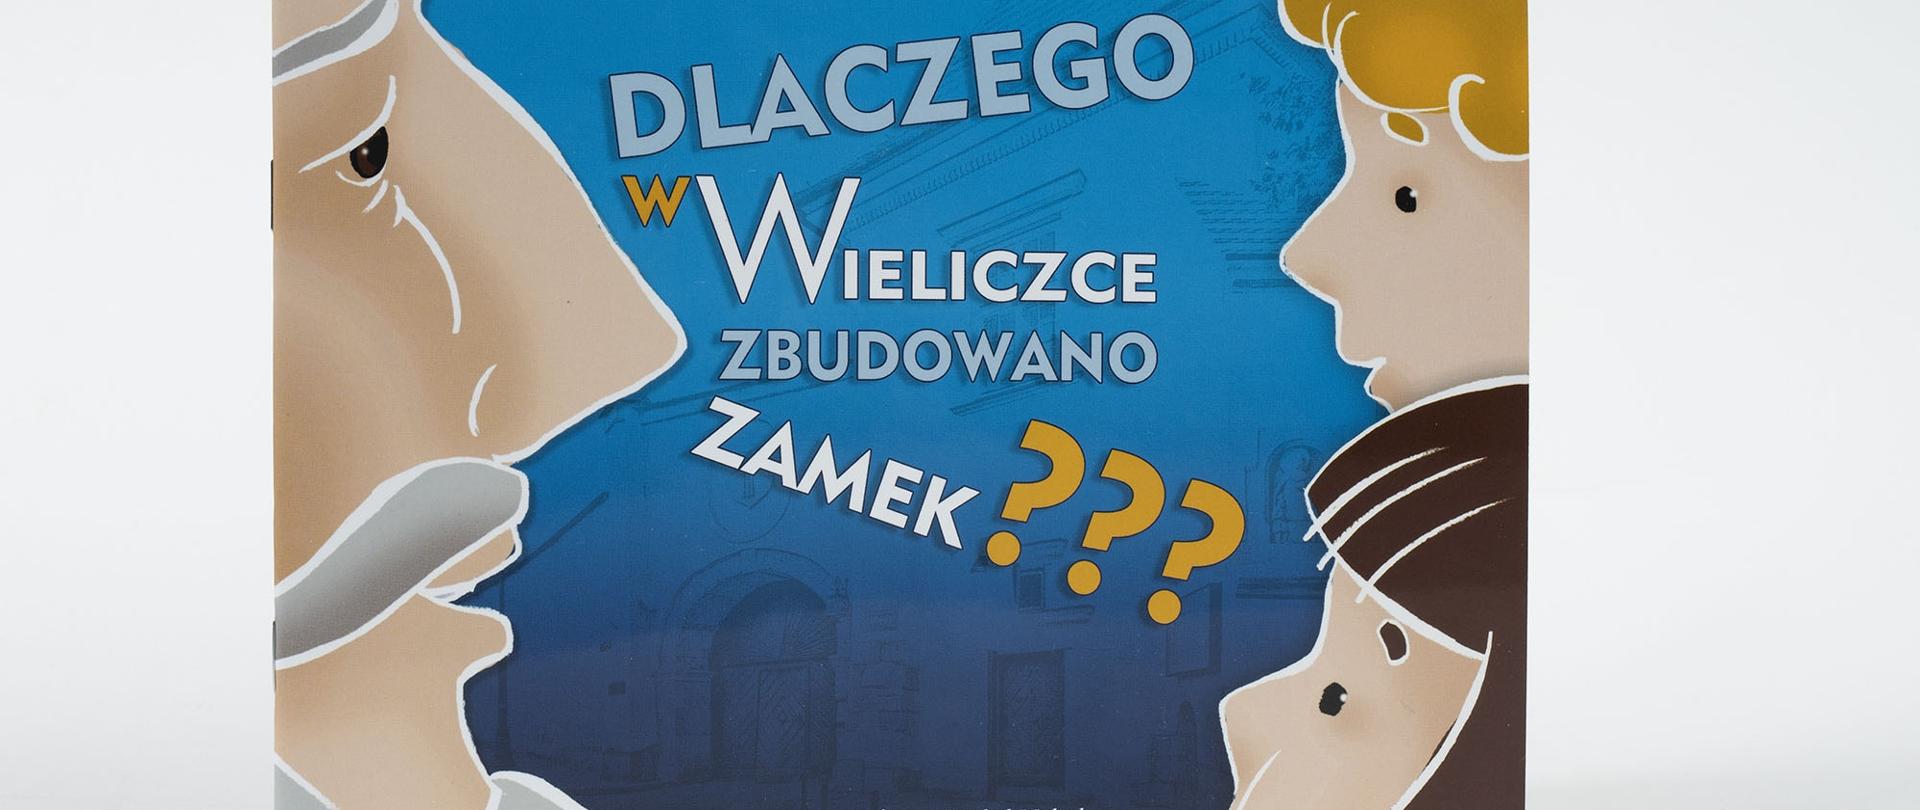 Książka „Dlaczego w Wieliczce zbudowano zamek?”